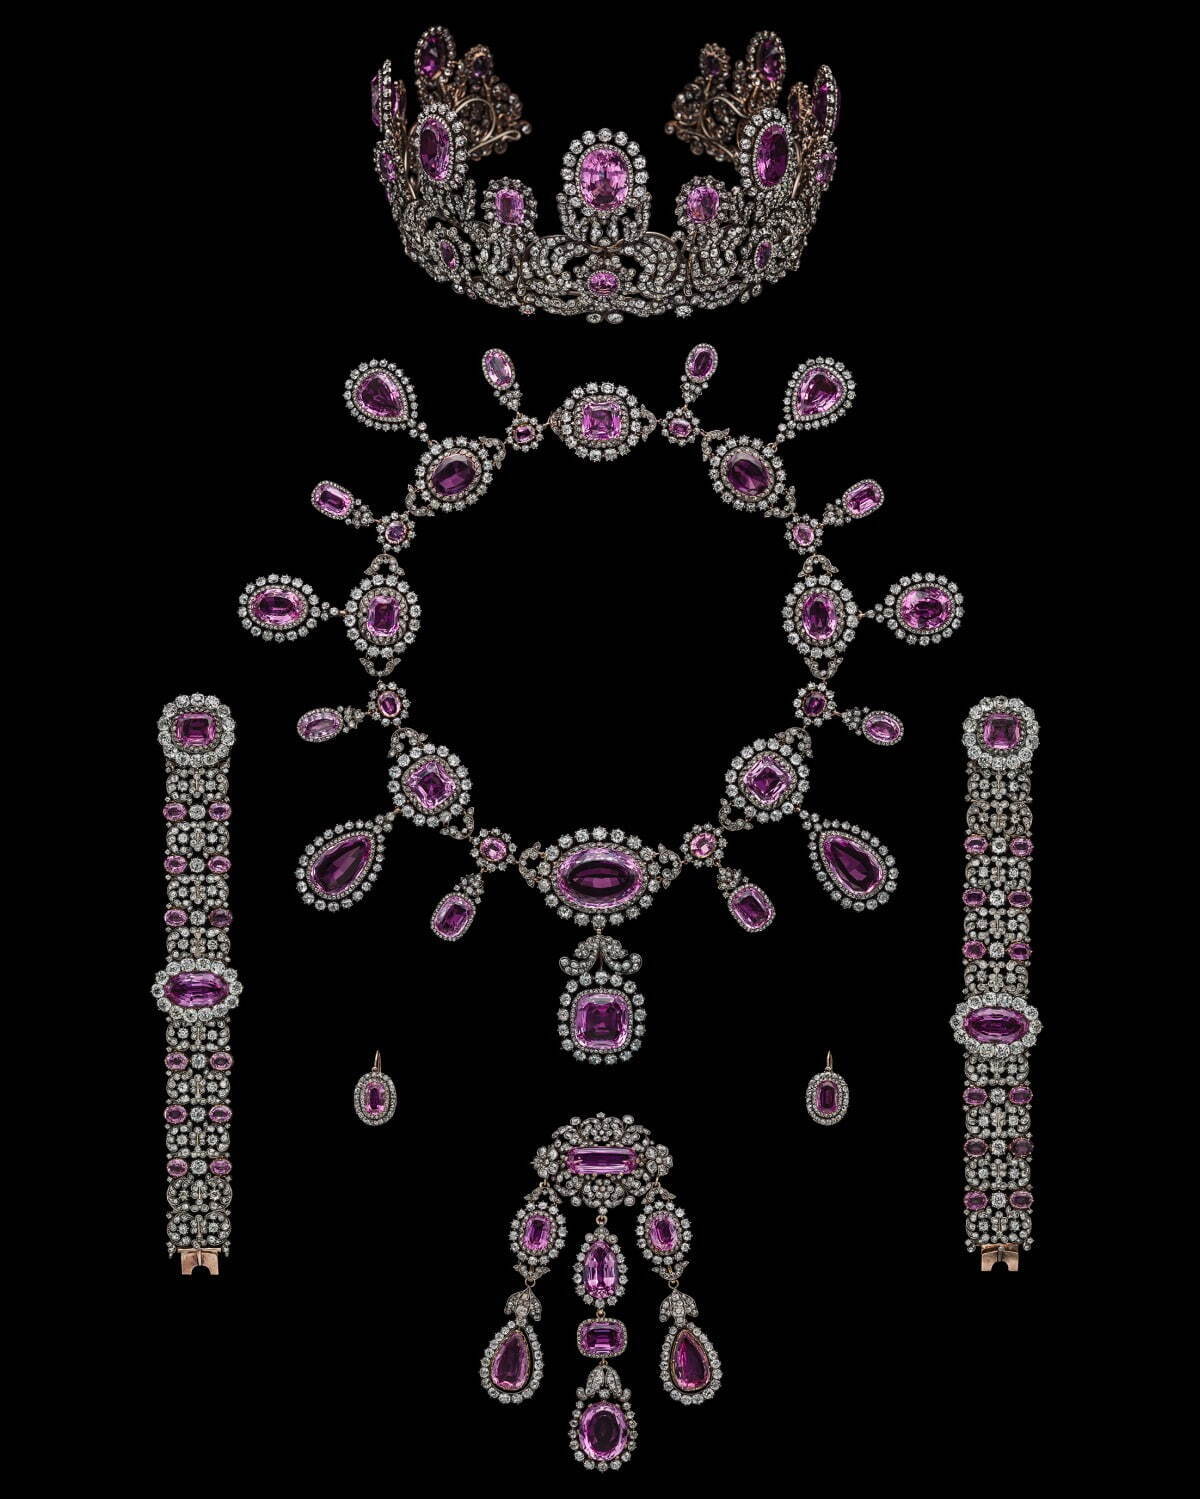 ヴュルテンベルク王室旧蔵　ピンク・トパーズとダイヤモンドのパリュール
個人蔵、協力：アルビオン アート・ジュエリー・インスティテュート